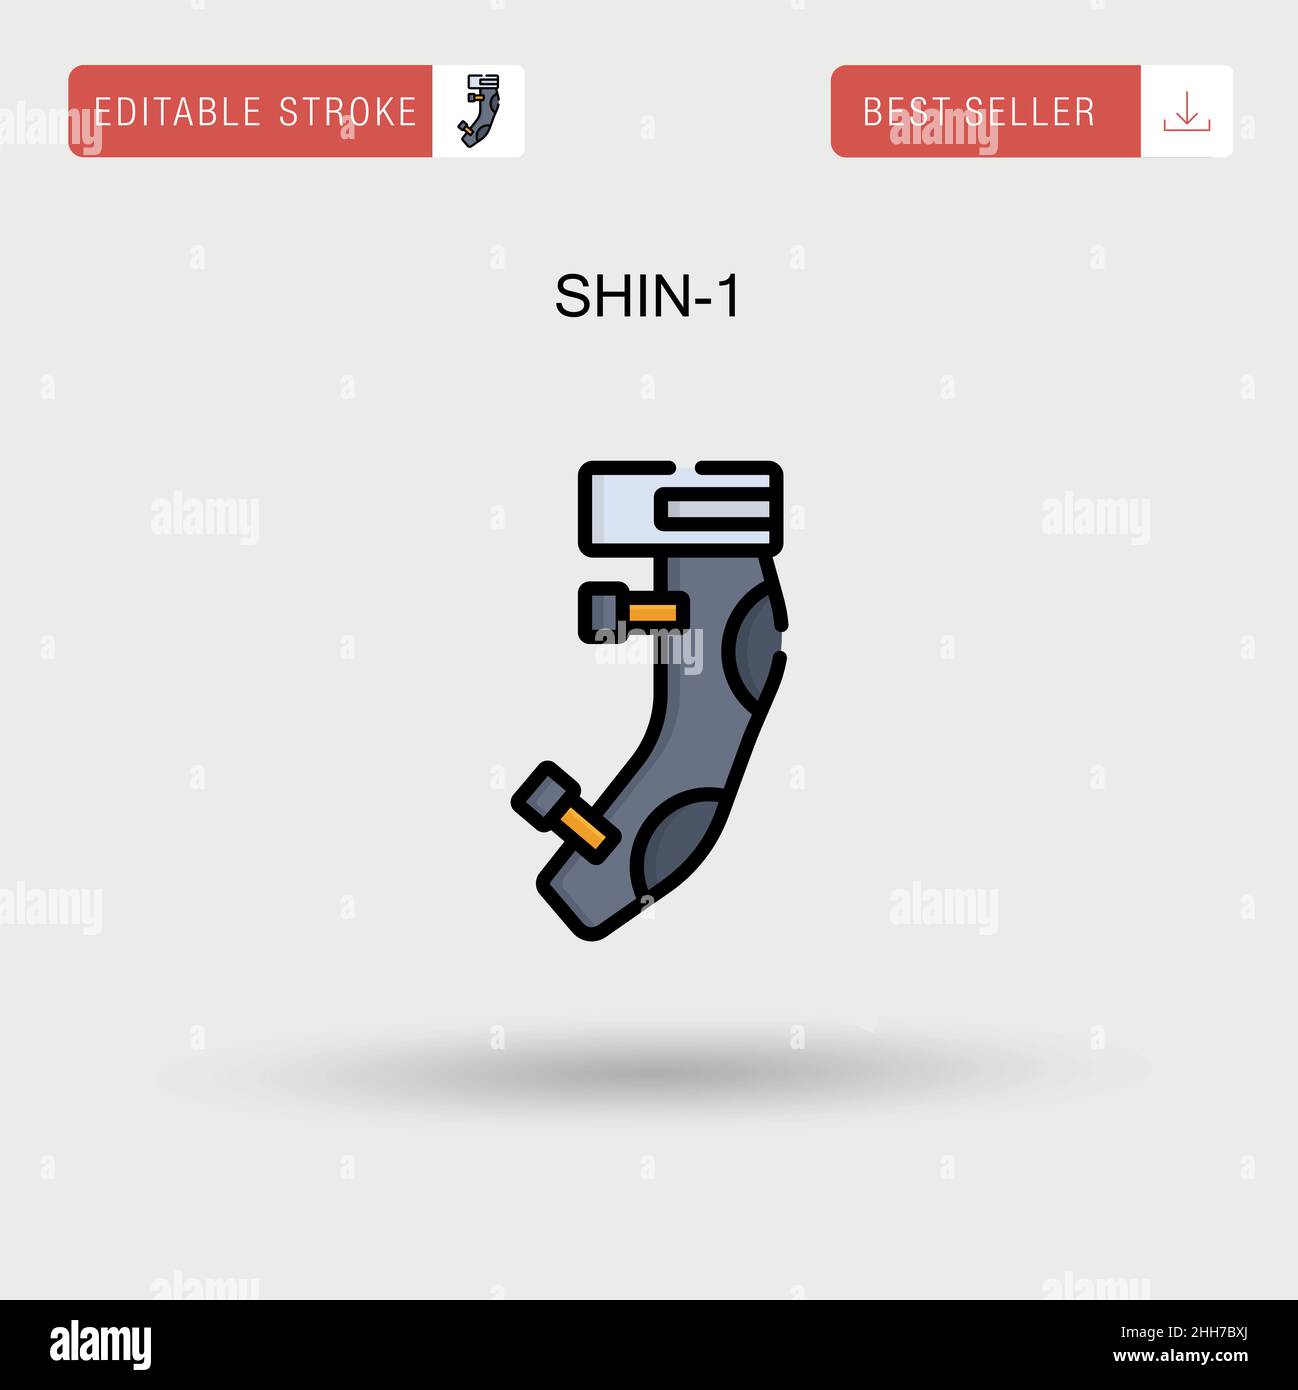 Shin-1 Simple vector icon. Stock Vector